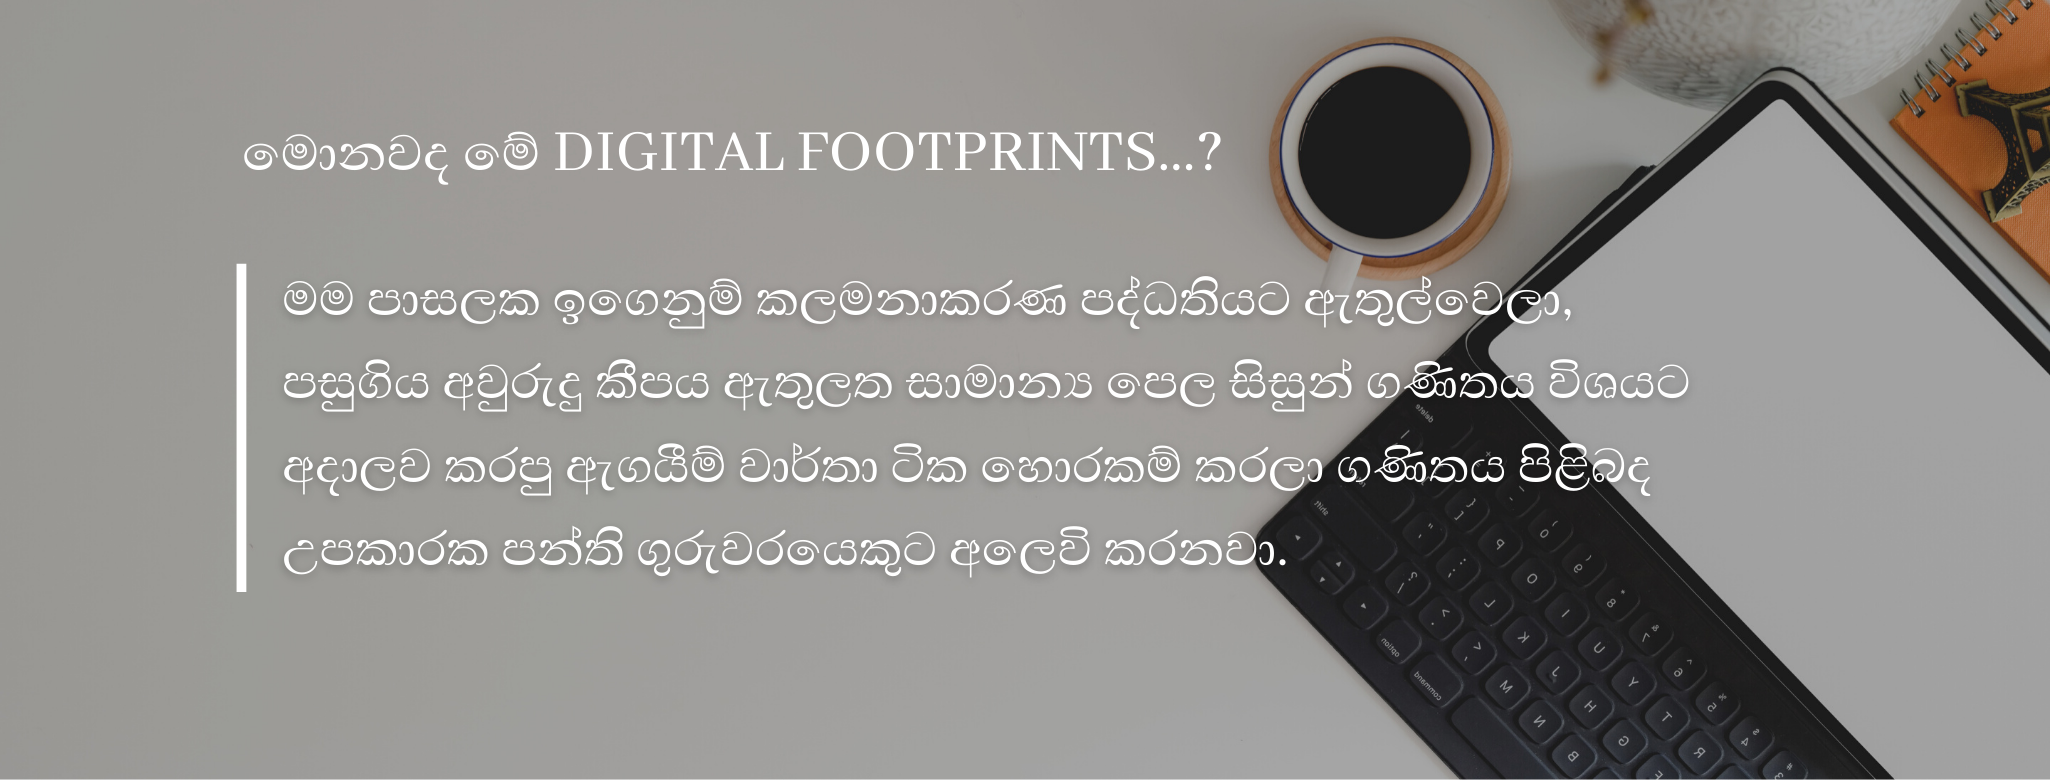 Thrimaz, Digital Footprint, Sinhala, Srilanka, Hacking,